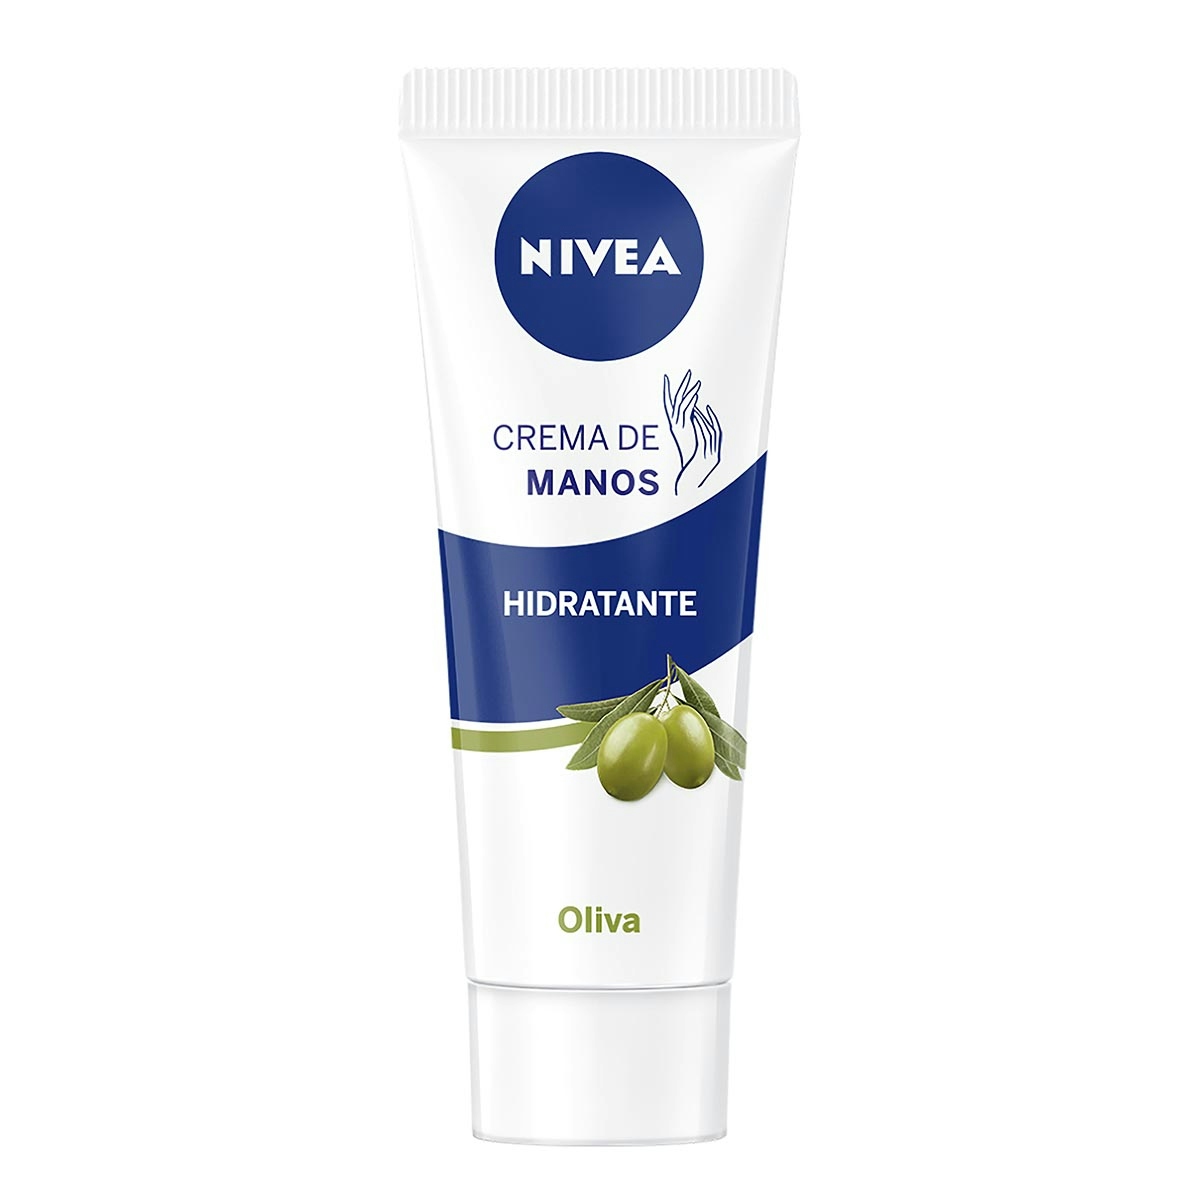 Crema de manos NIVEA aceite de oliva piel seca tubo 100 ml